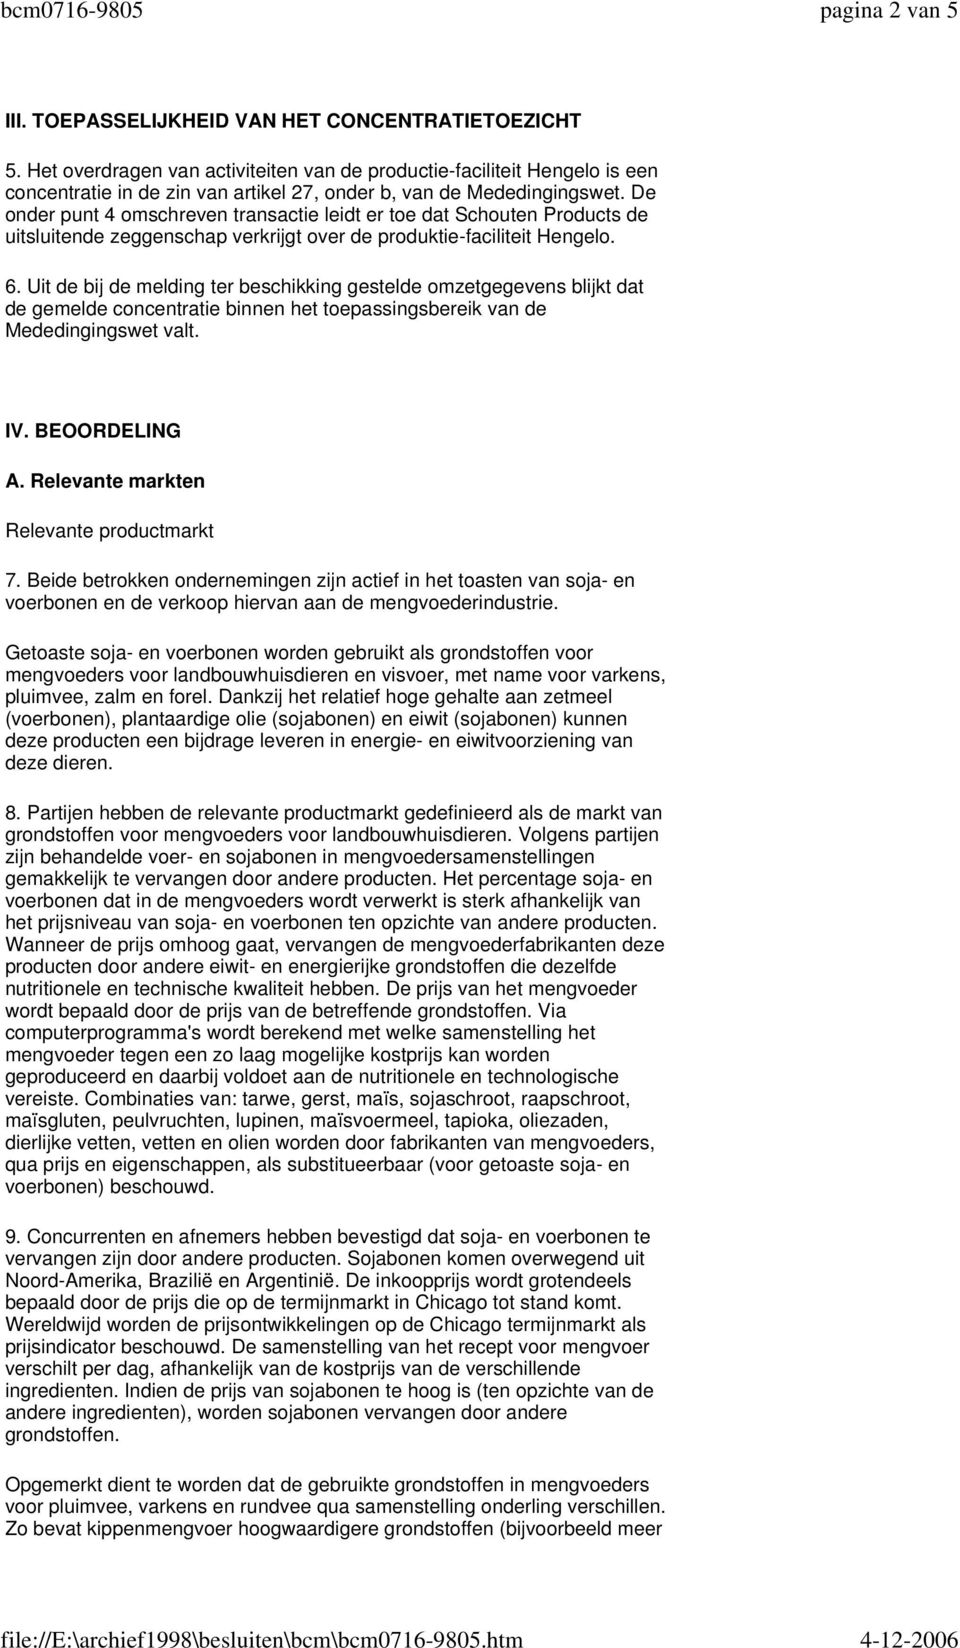 De onder punt 4 omschreven transactie leidt er toe dat Schouten Products de uitsluitende zeggenschap verkrijgt over de produktie-faciliteit Hengelo. 6.